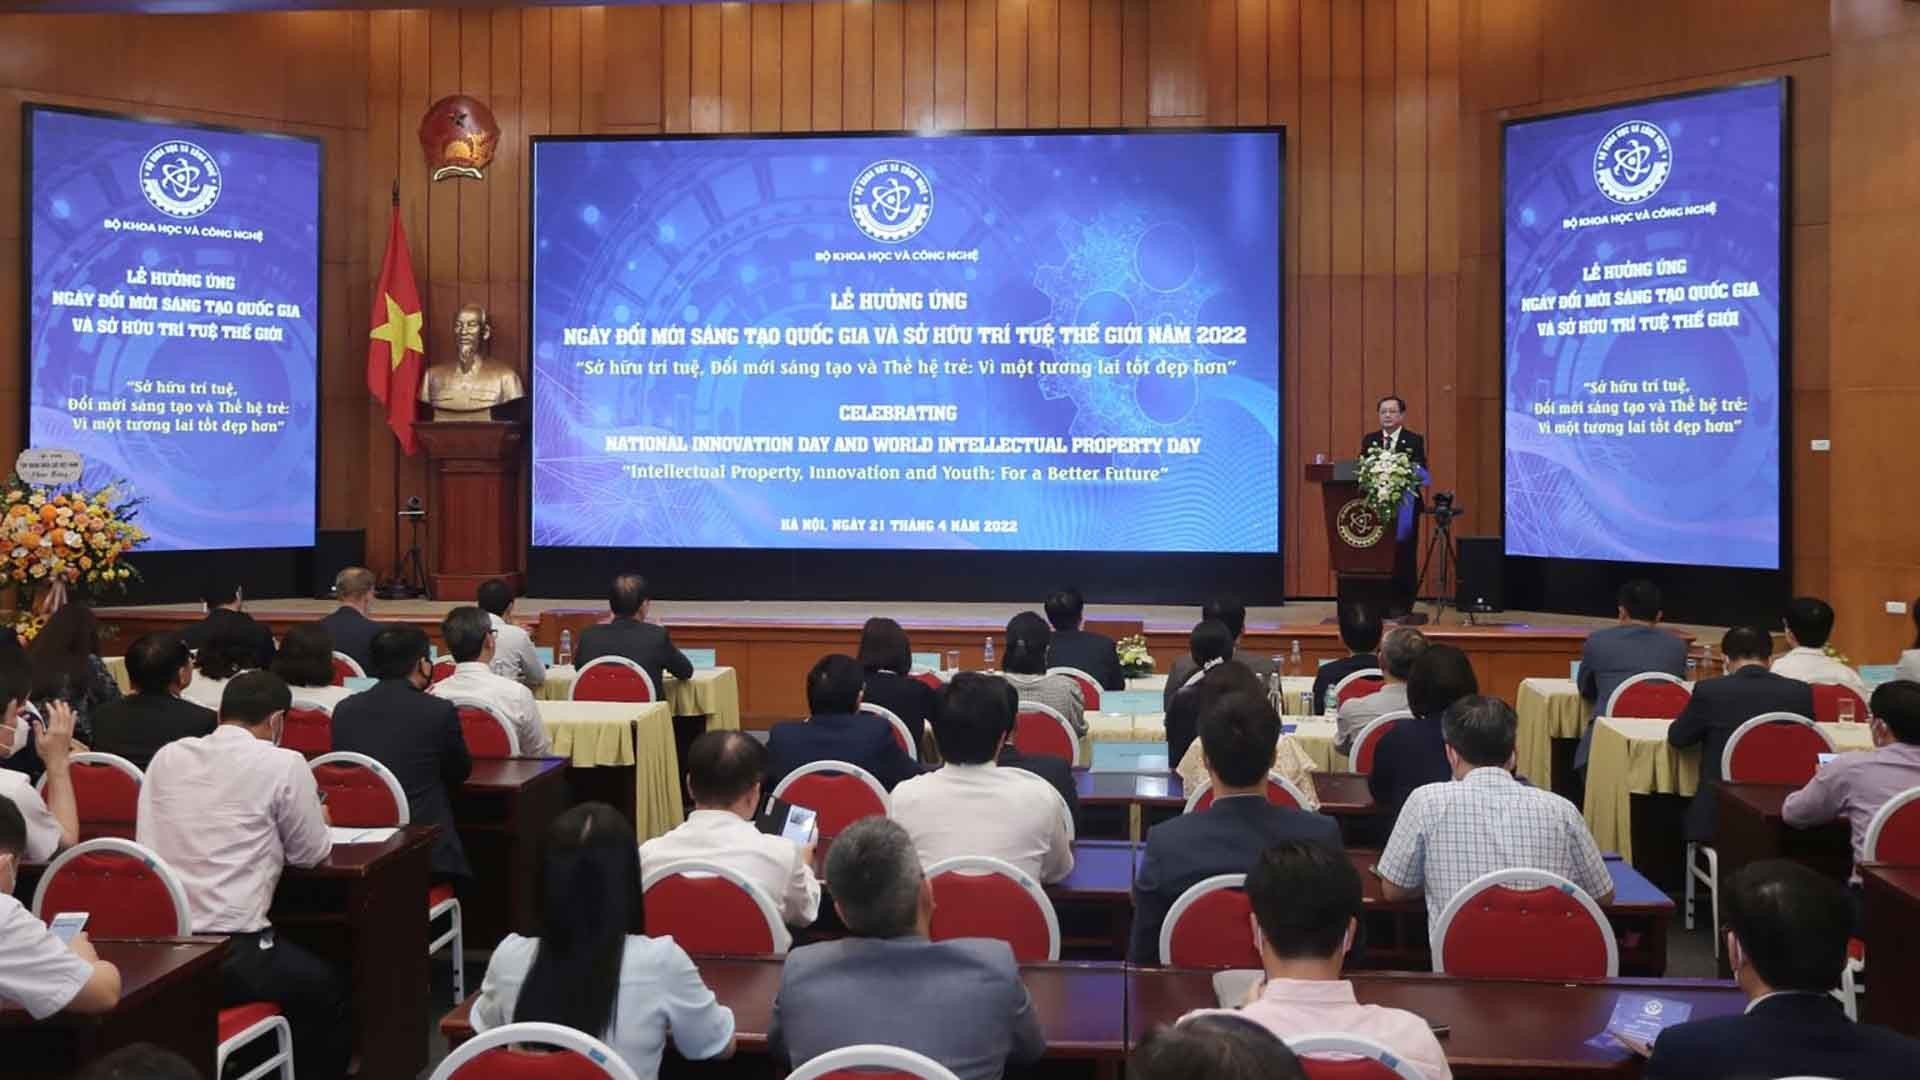 Lần đầu tiên Việt Nam tổ chức Ngày Đổi mới sáng tạo quốc gia